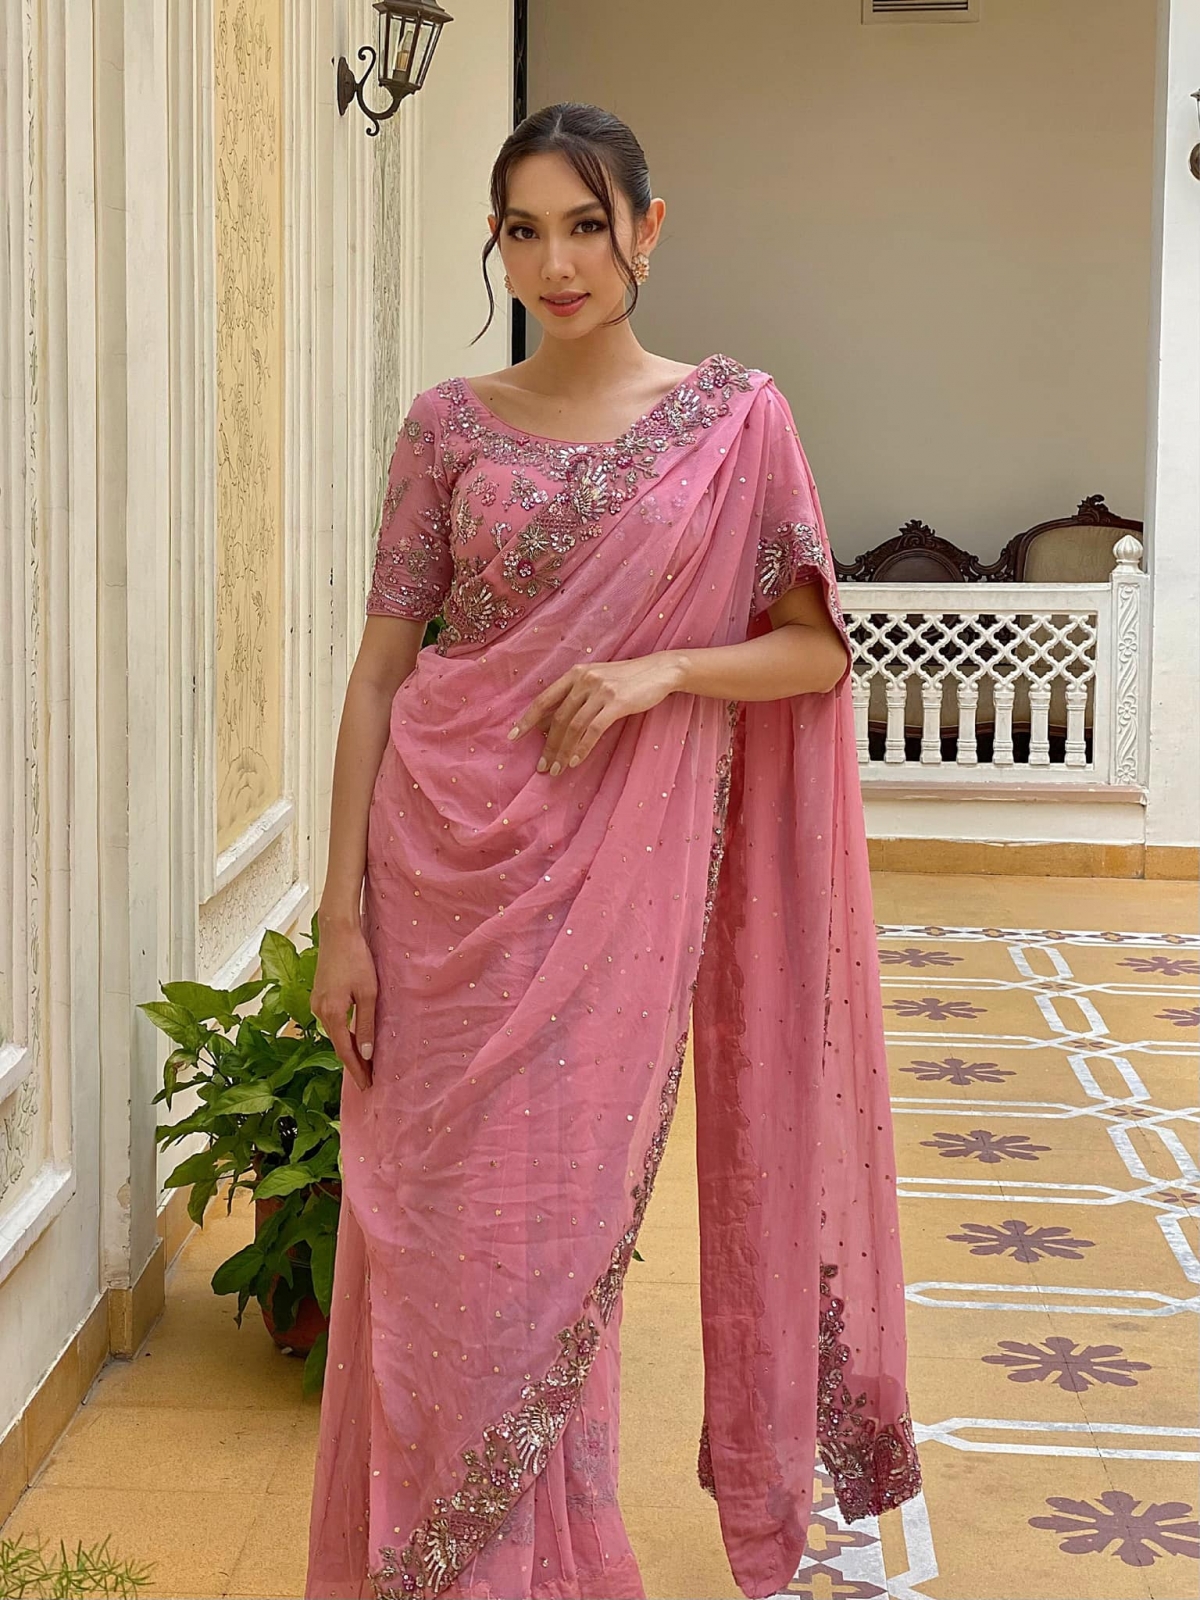 Hoa hậu Thùy Tiên tung ảnh mặc trang phục truyền thống Ấn Độ xinh đẹp